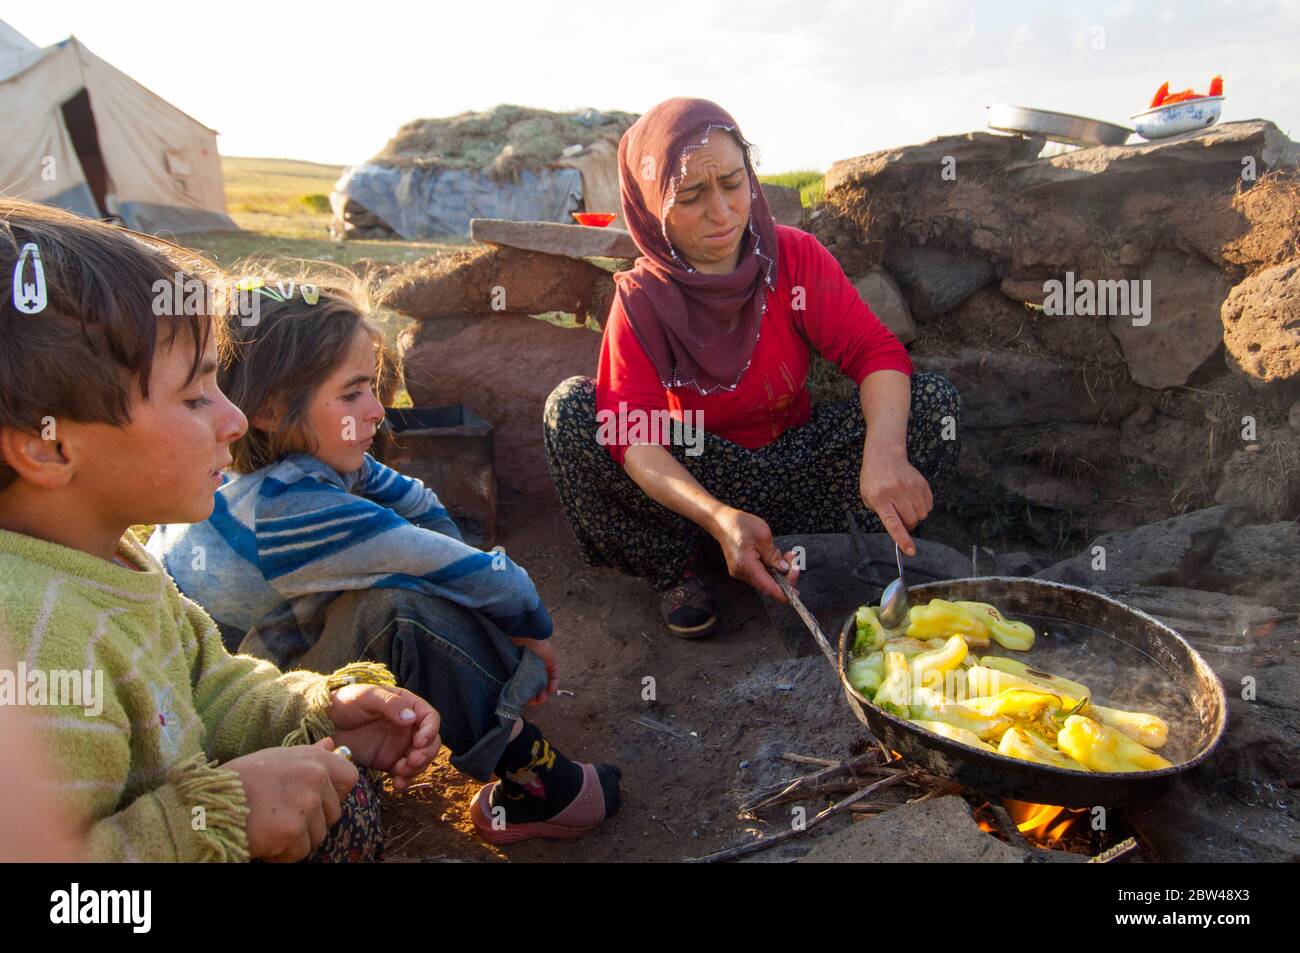 Asien, Türkei, Provinz Bingöl, Frau vom Stamm der Beritan-Nomaden an  Feuerstelle beim Zubereiten von Essen auf einer Hochweide in den Serafettin-Berg Stock Photo